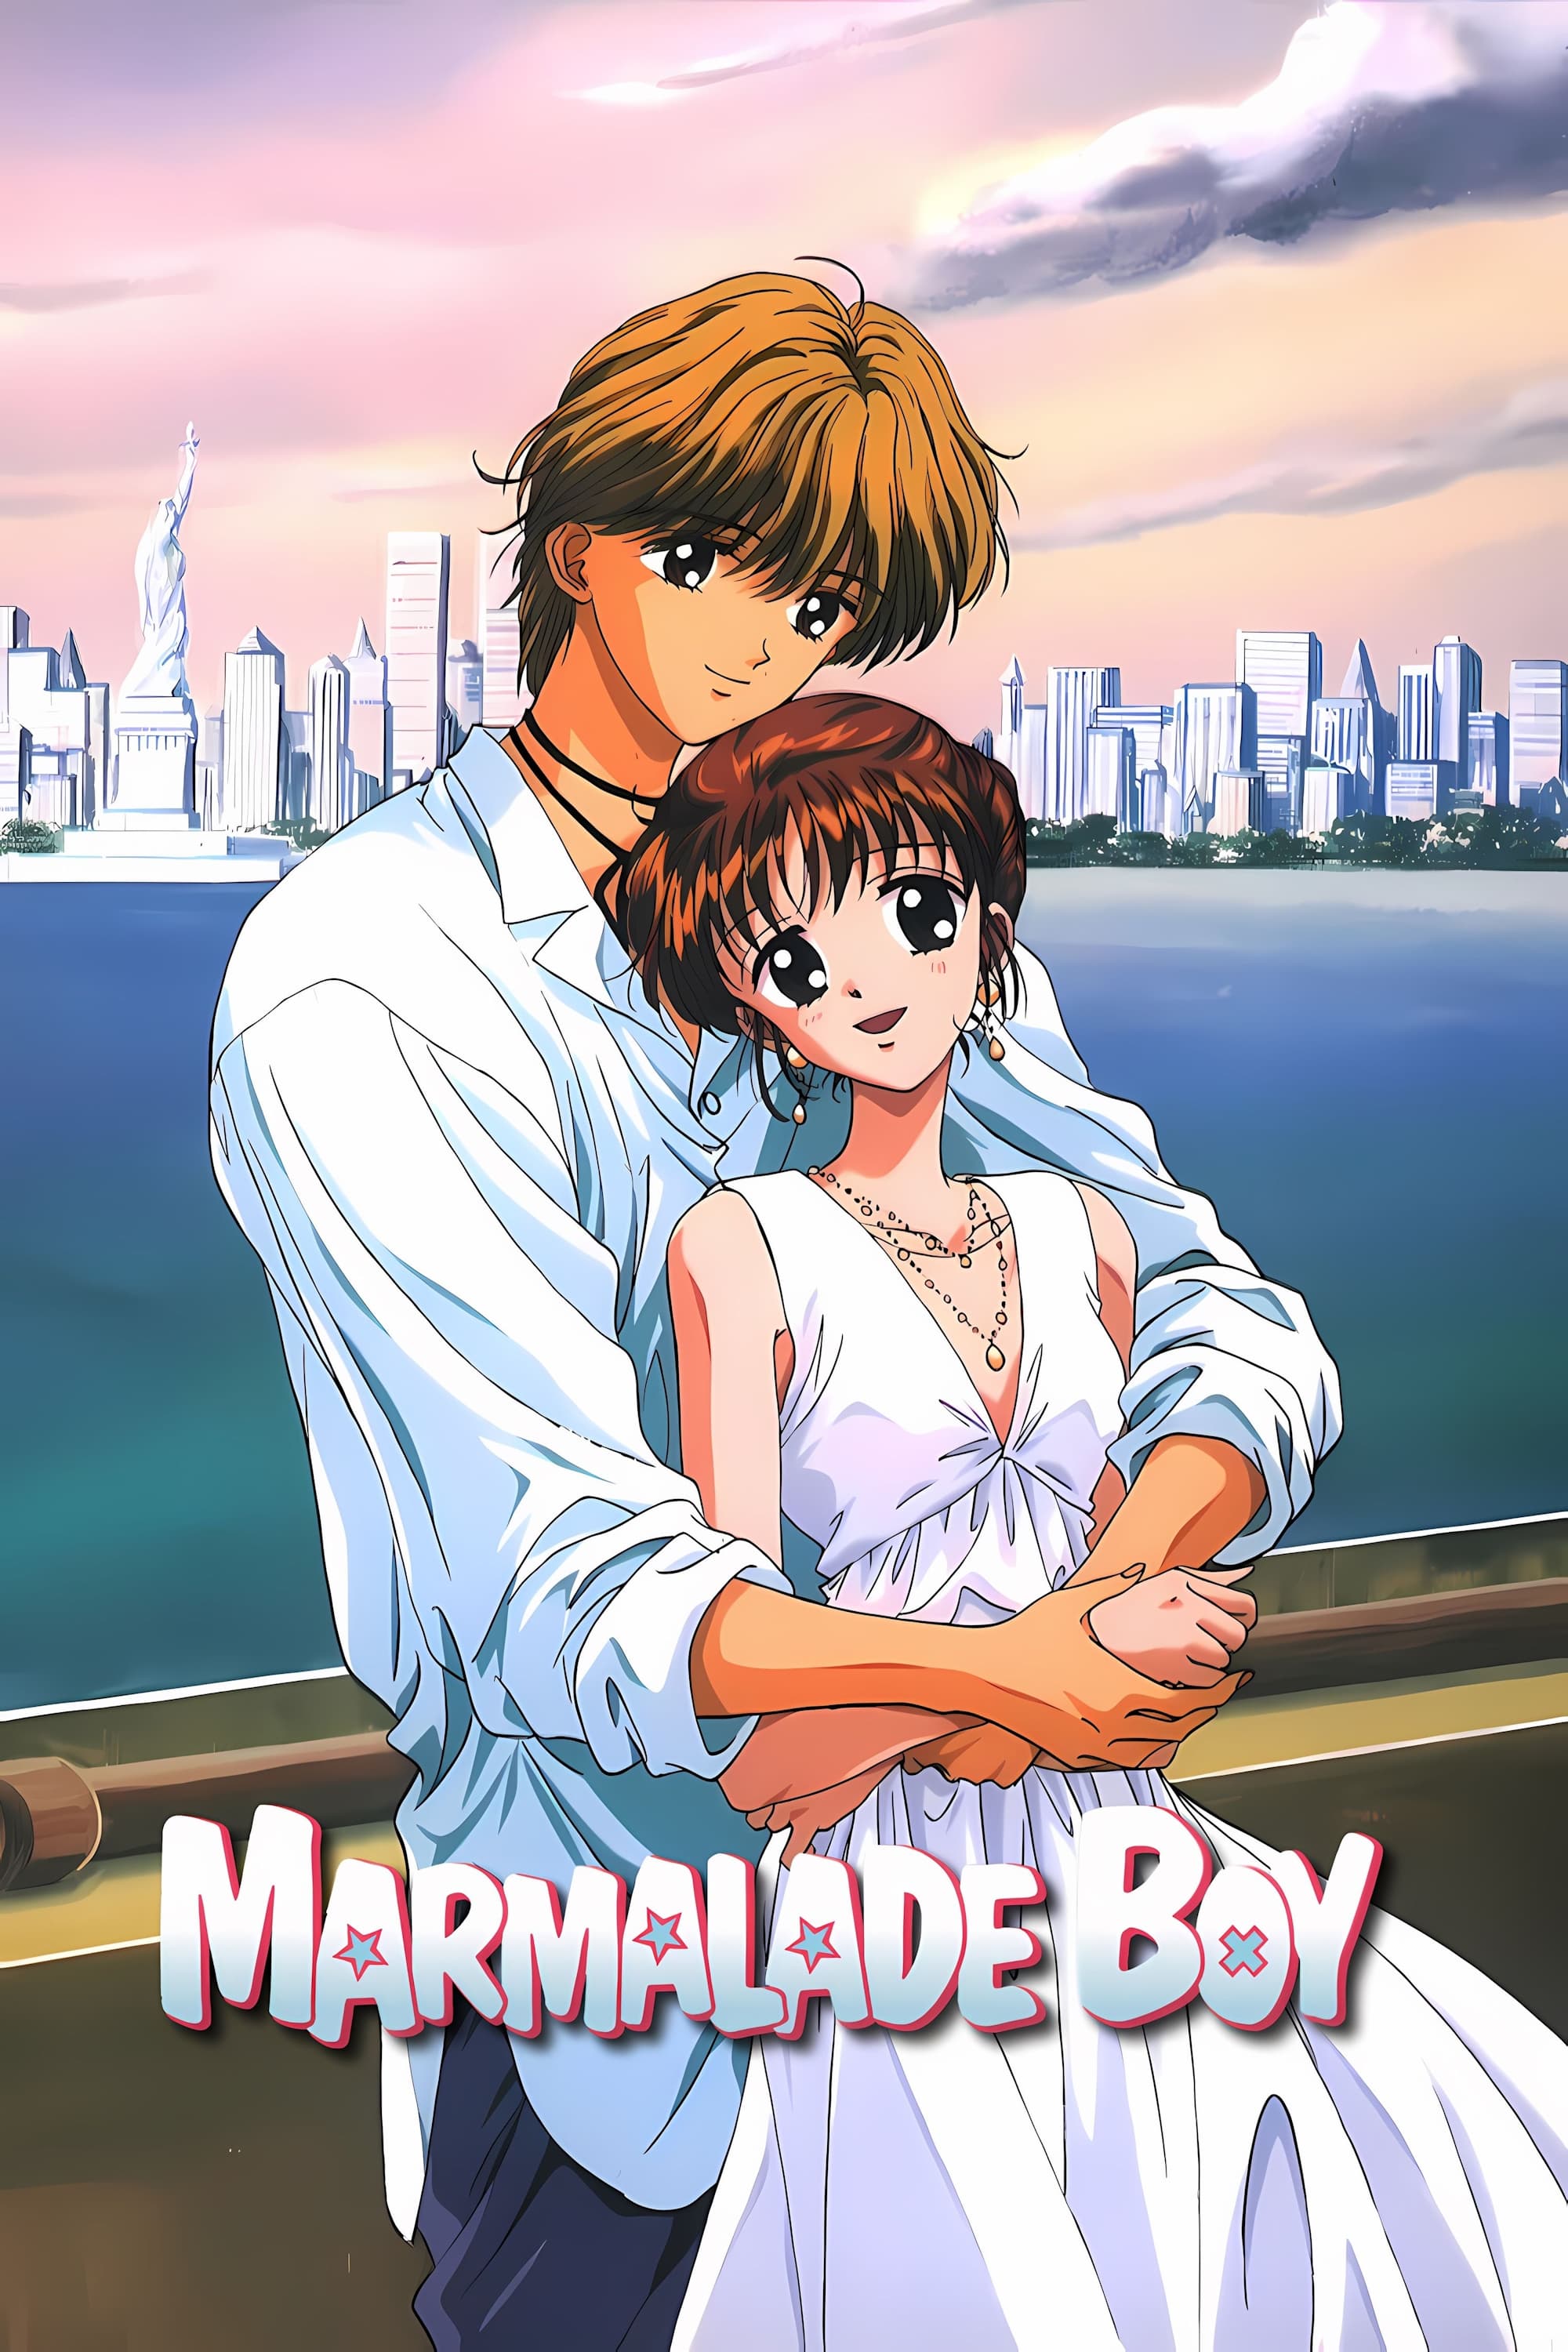 Marmalade Boy (1995)